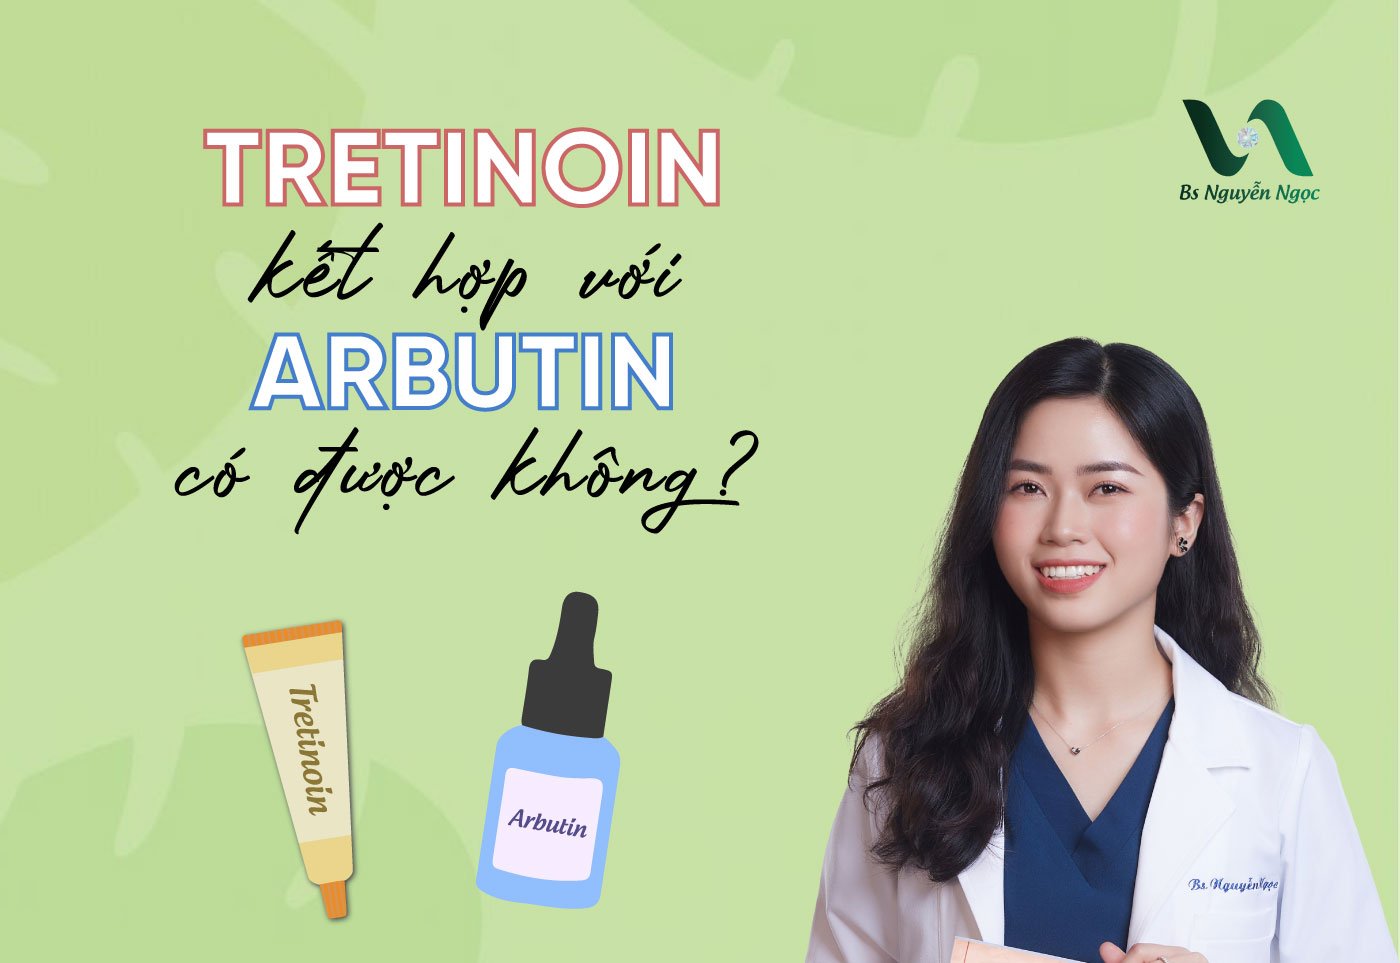 Tretinoin kết hợp với Arbutin có được không?